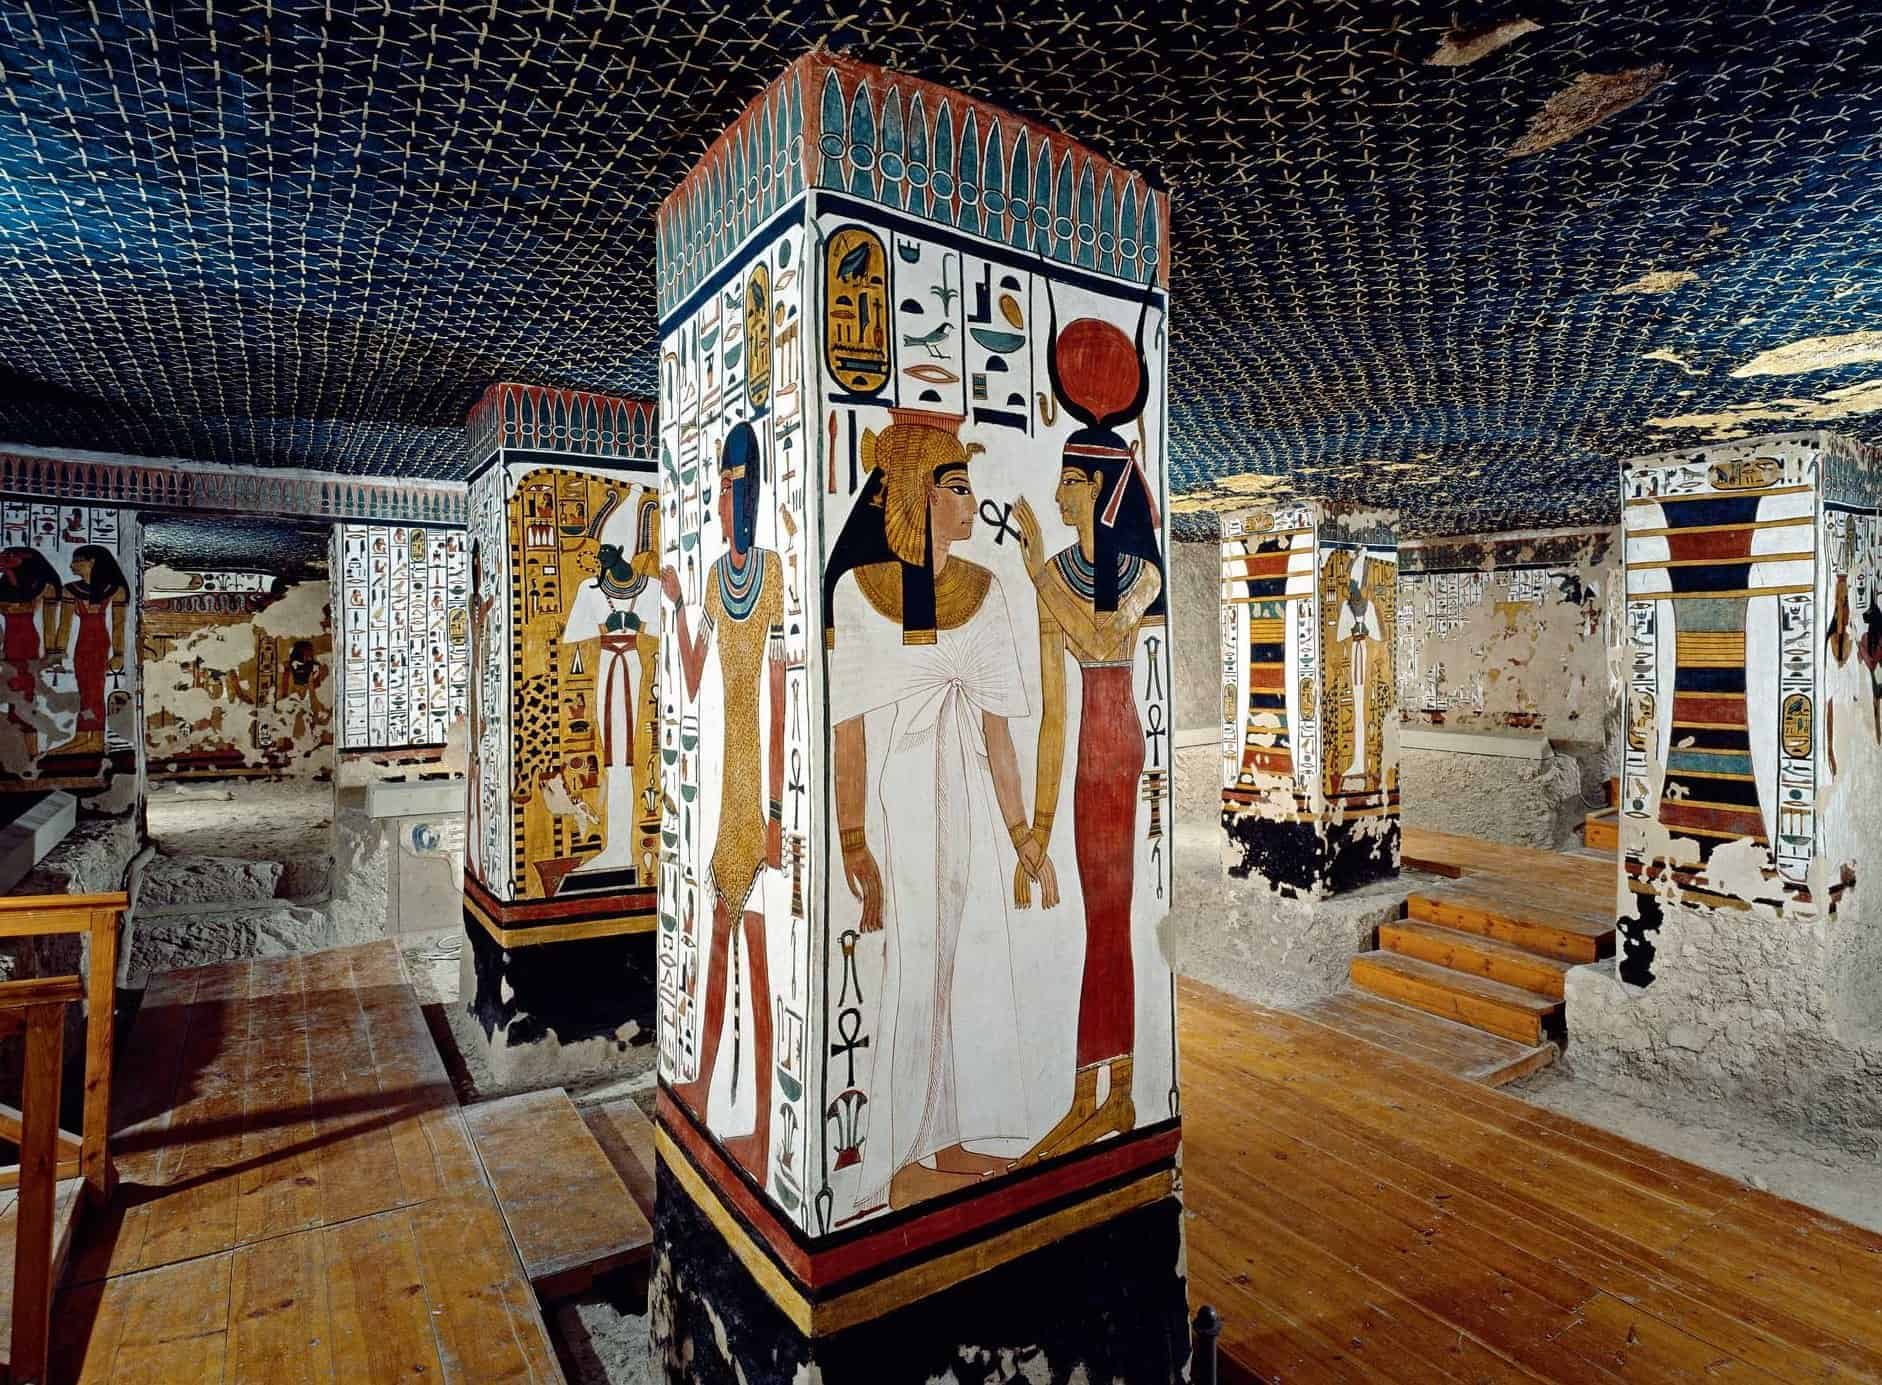 Queen Nefertari's Tomb in the Valley of the Queens